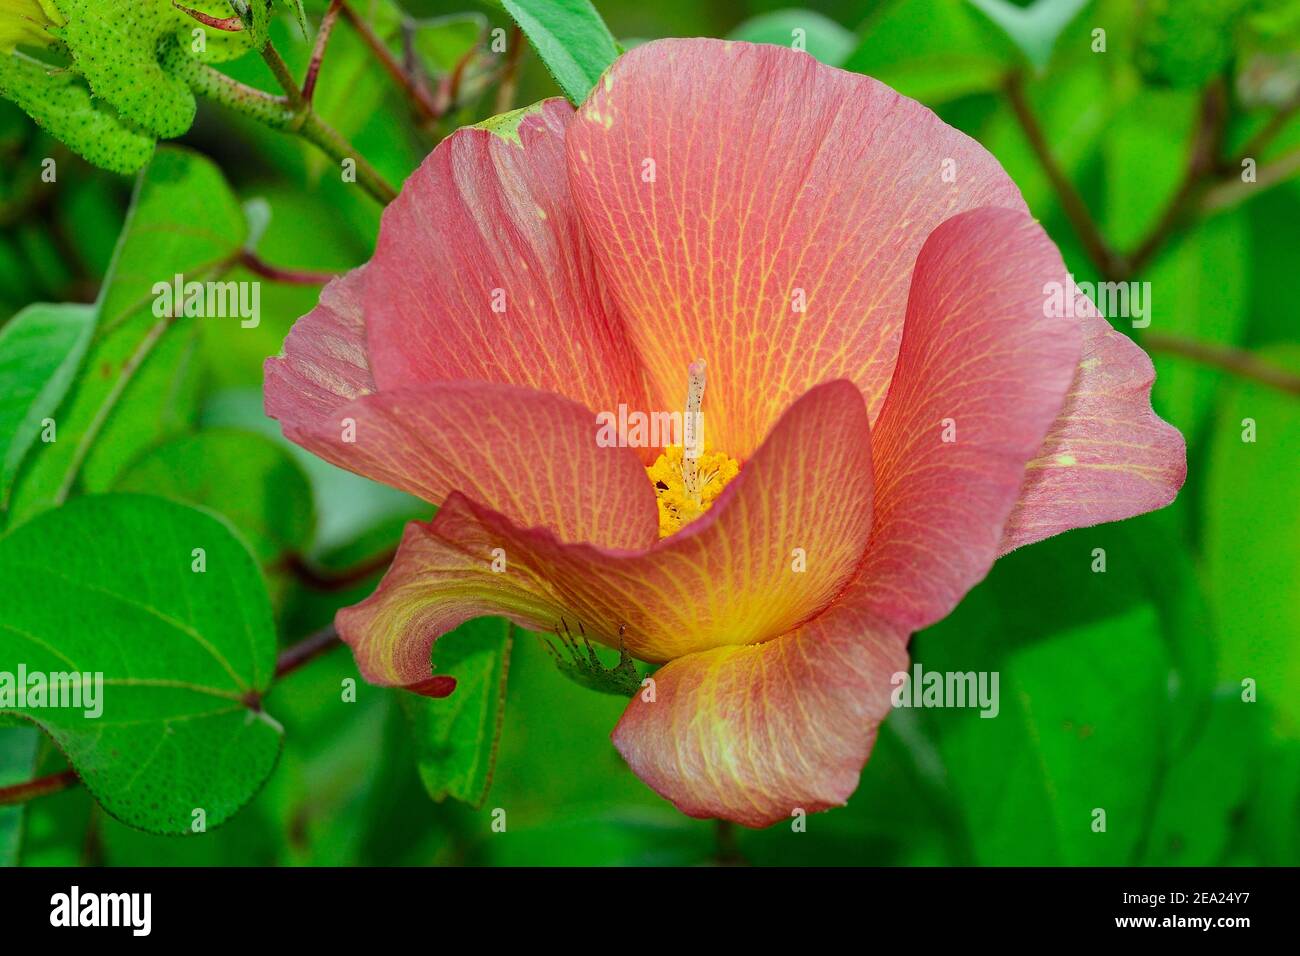 Flower of Galapagos cotton (Gossypium barbadense var. Darwinii), Isabela Island, Galapagos, Ecuador Stock Photo